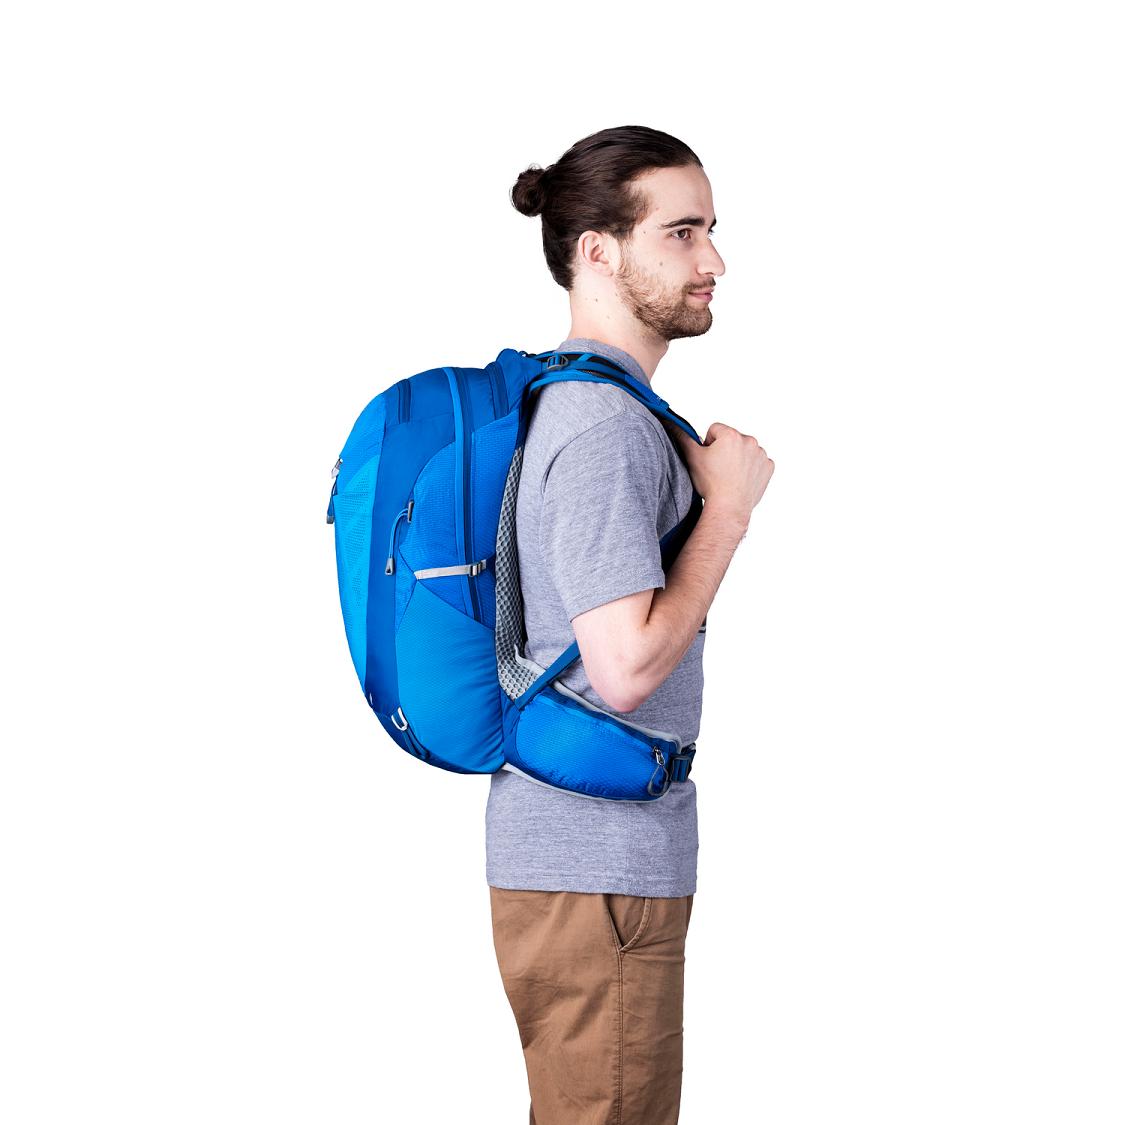 Men Gregory Miwok 18 Hiking Backpack Blue Sale QJTR53982